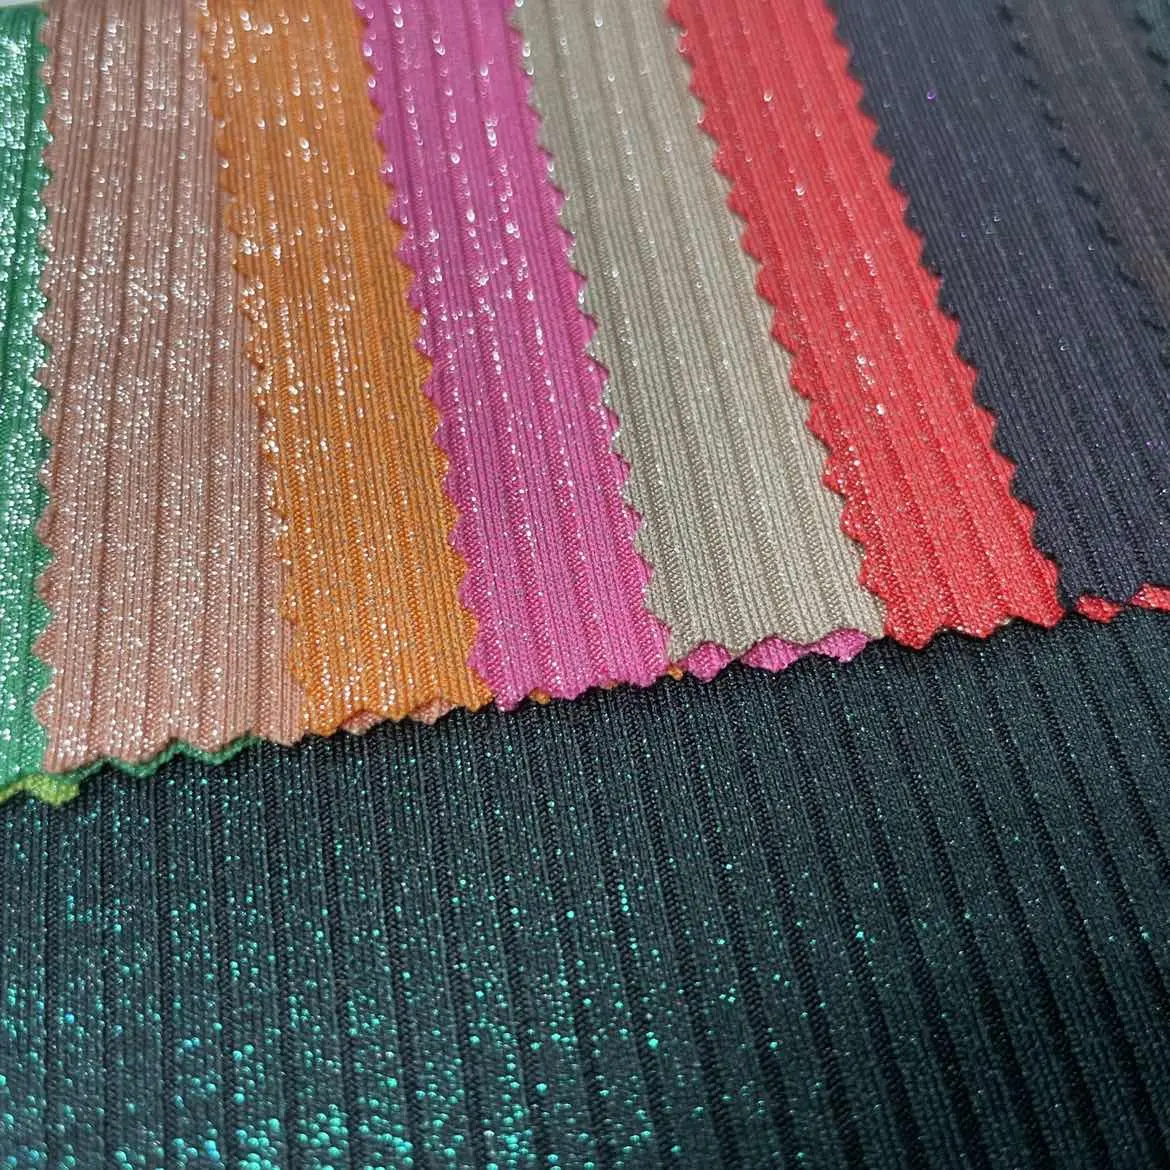 China Lieferant Polyester Spandex glänzende Glitzer folie gestrickt 4*2 gerippte Pullover Rippens toff für Kleidungs material